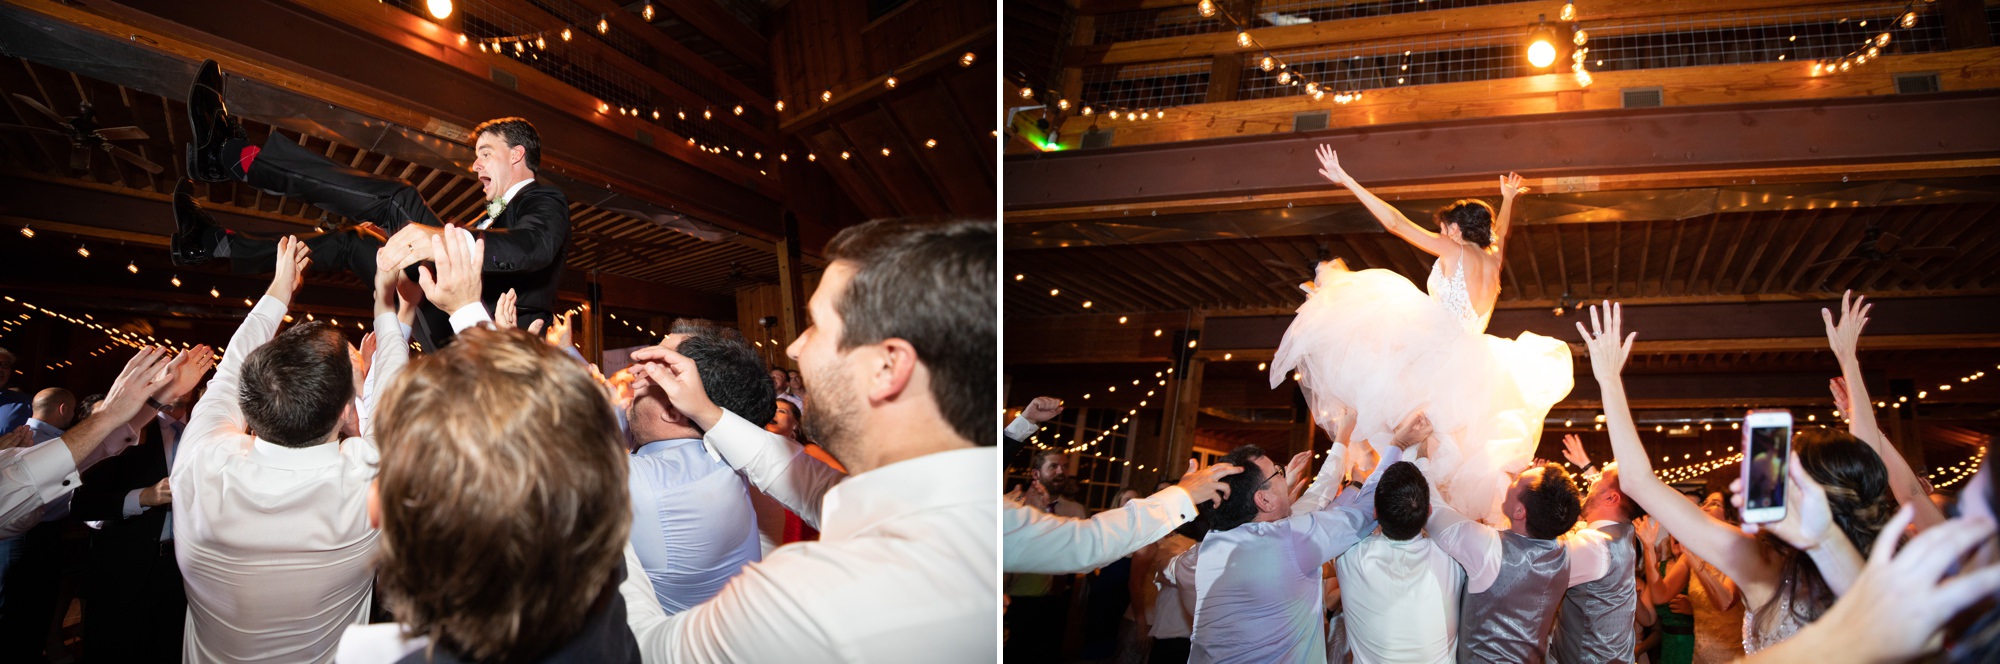 Best dancing wedding photographers